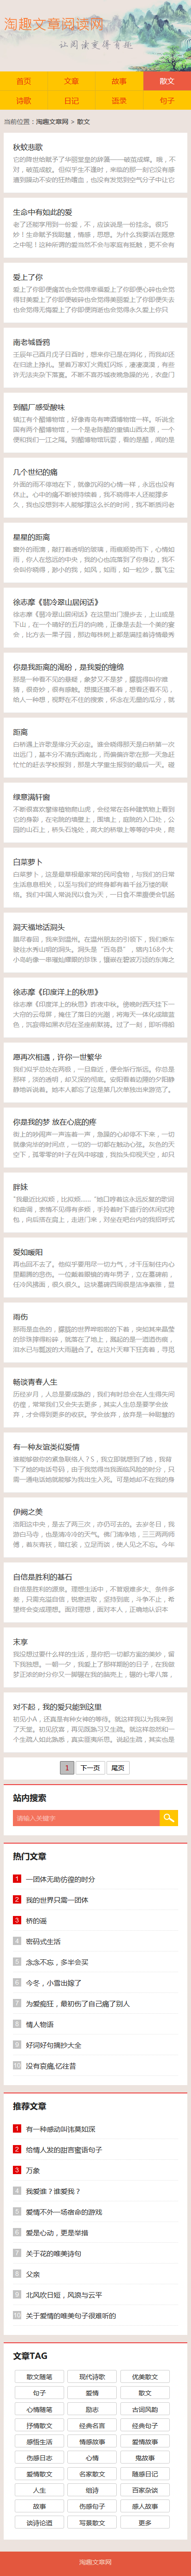 帝国cms橙色系新闻文章日记语录博客型自适应手机网站模板_手机版列表页